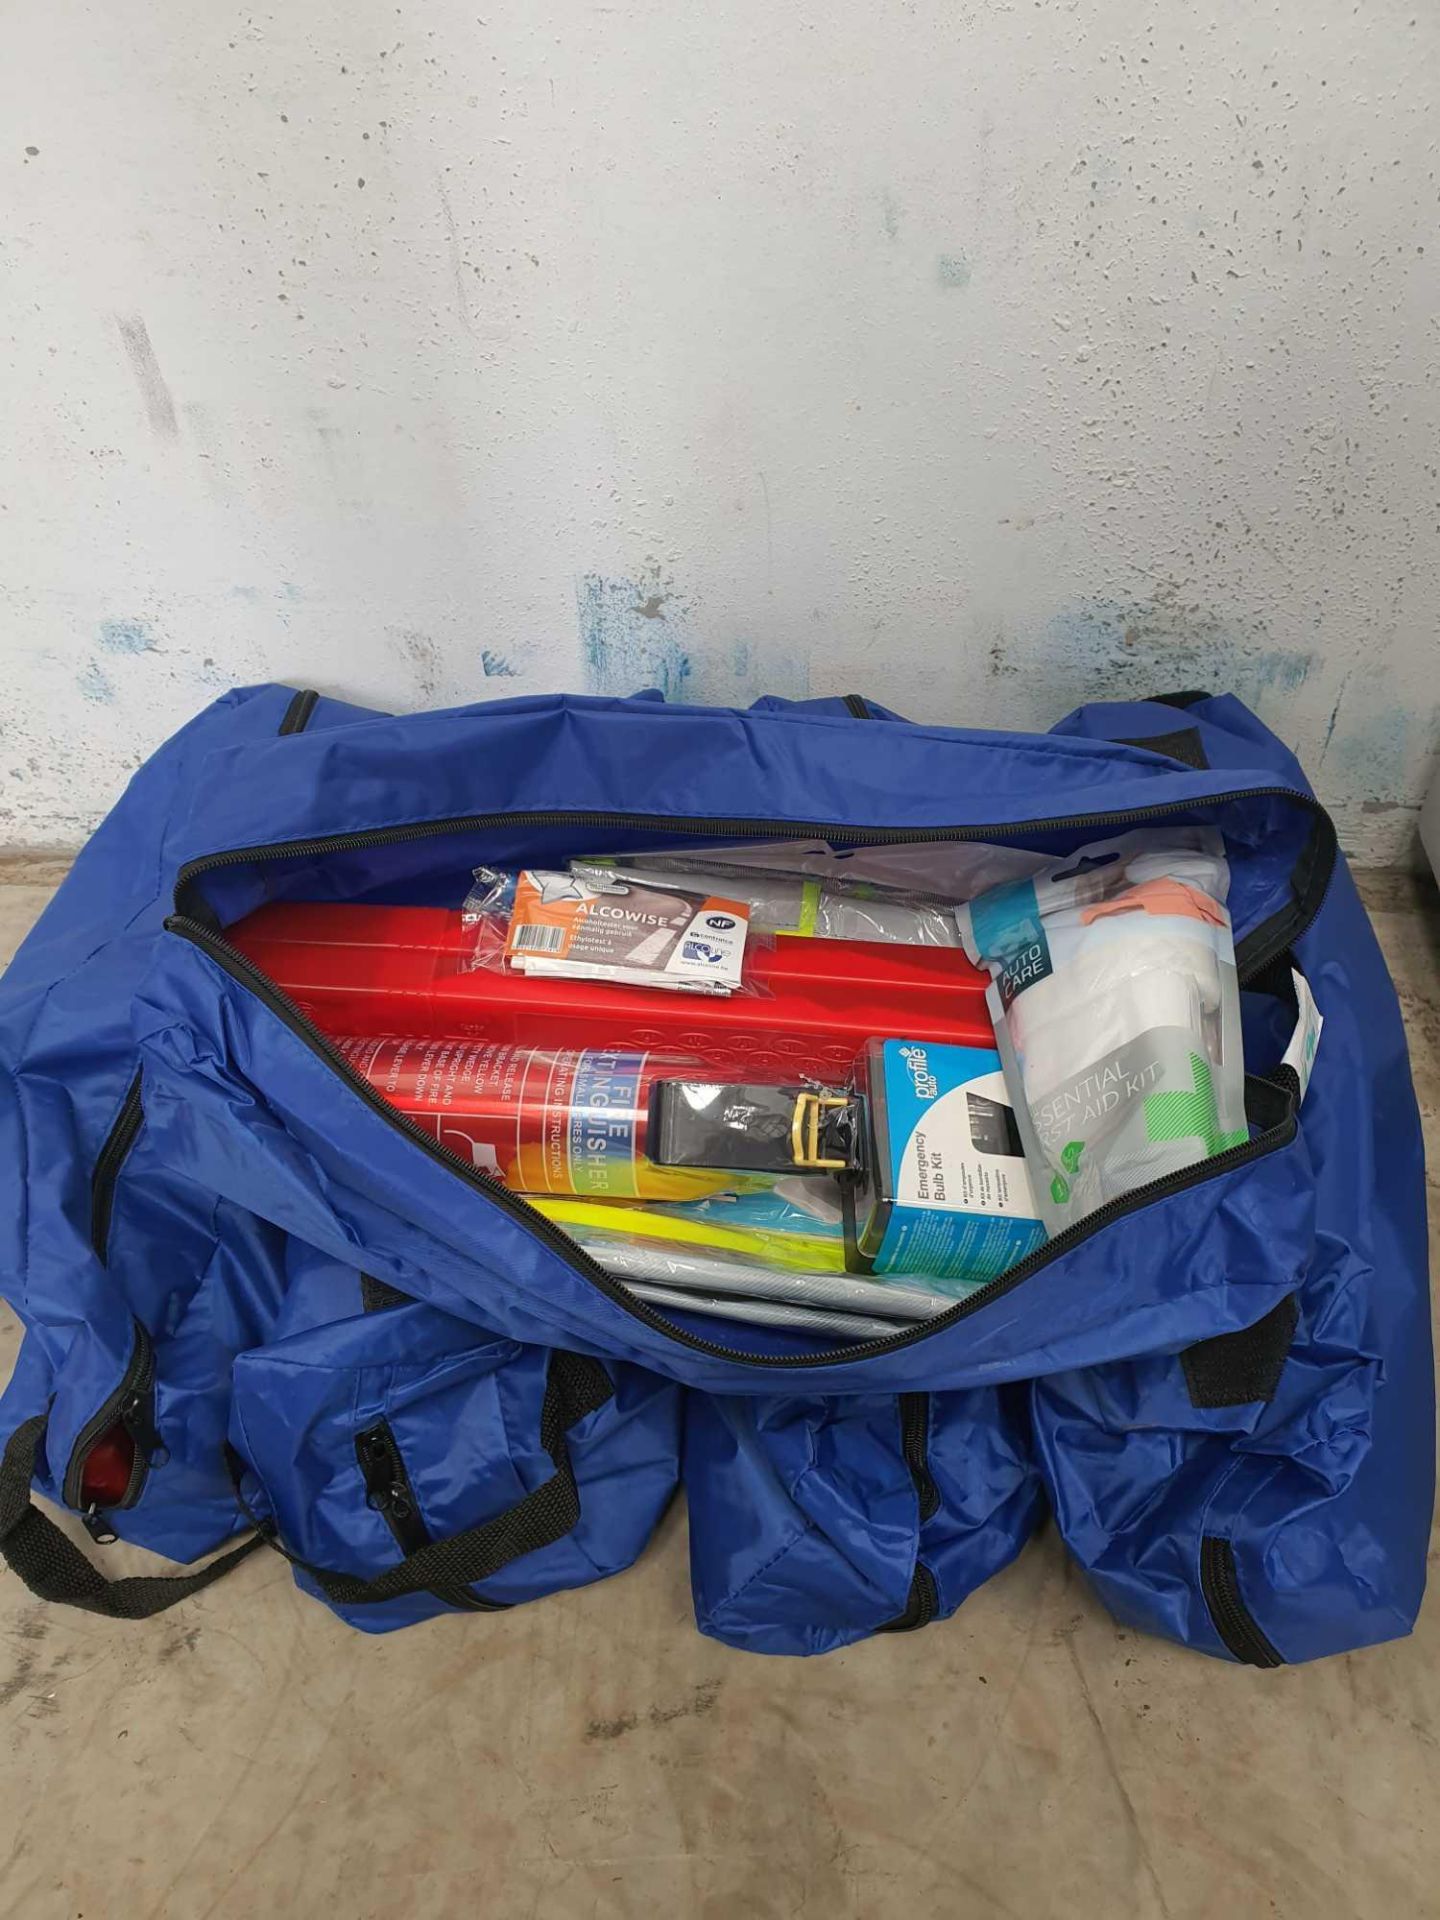 Emergency breakdown survival kit x 5 - Image 2 of 2